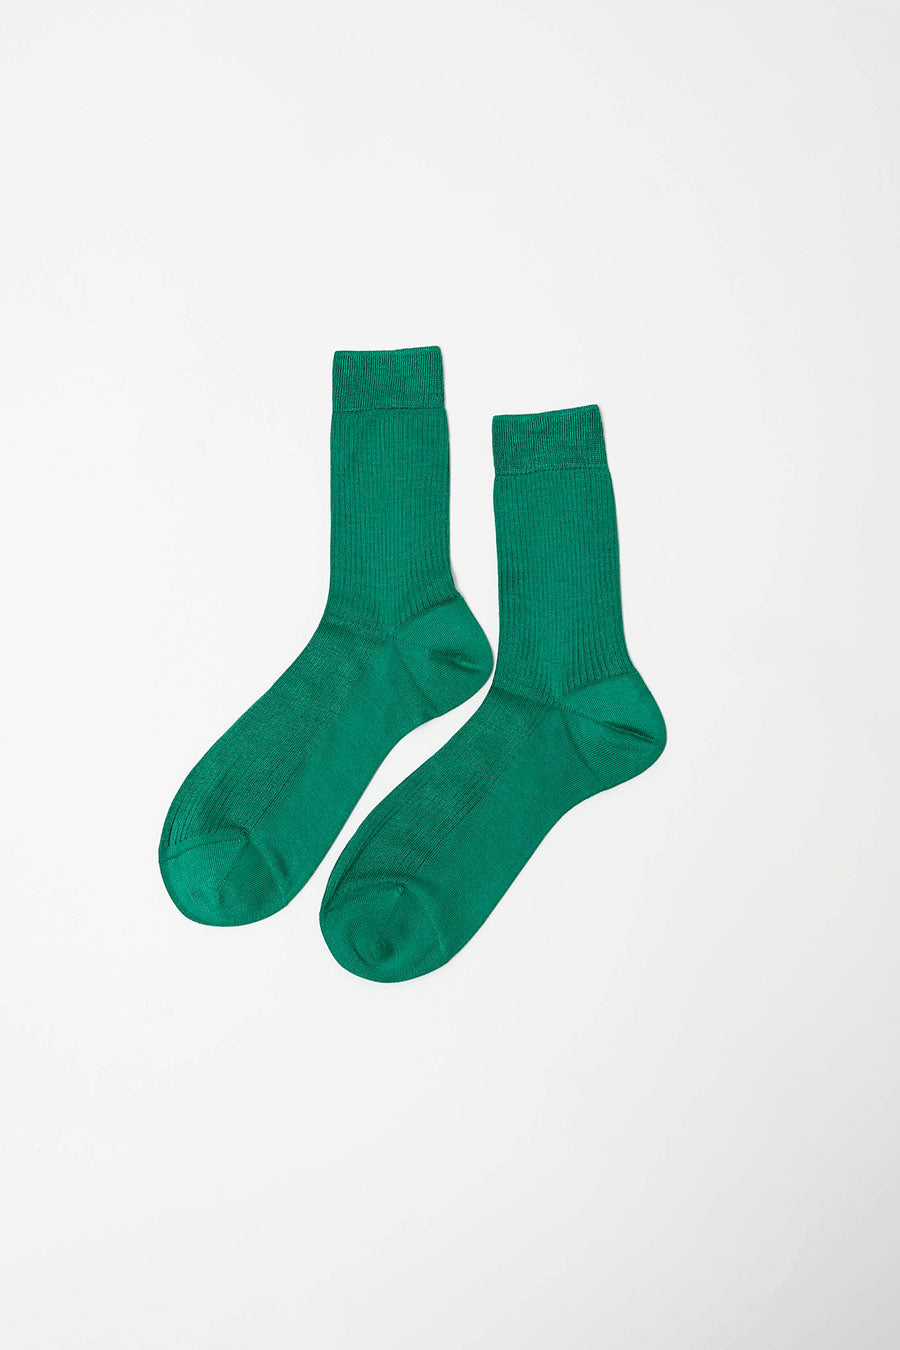 Maria La Rosa Silk Ribbed Ankle Socks in Banderia